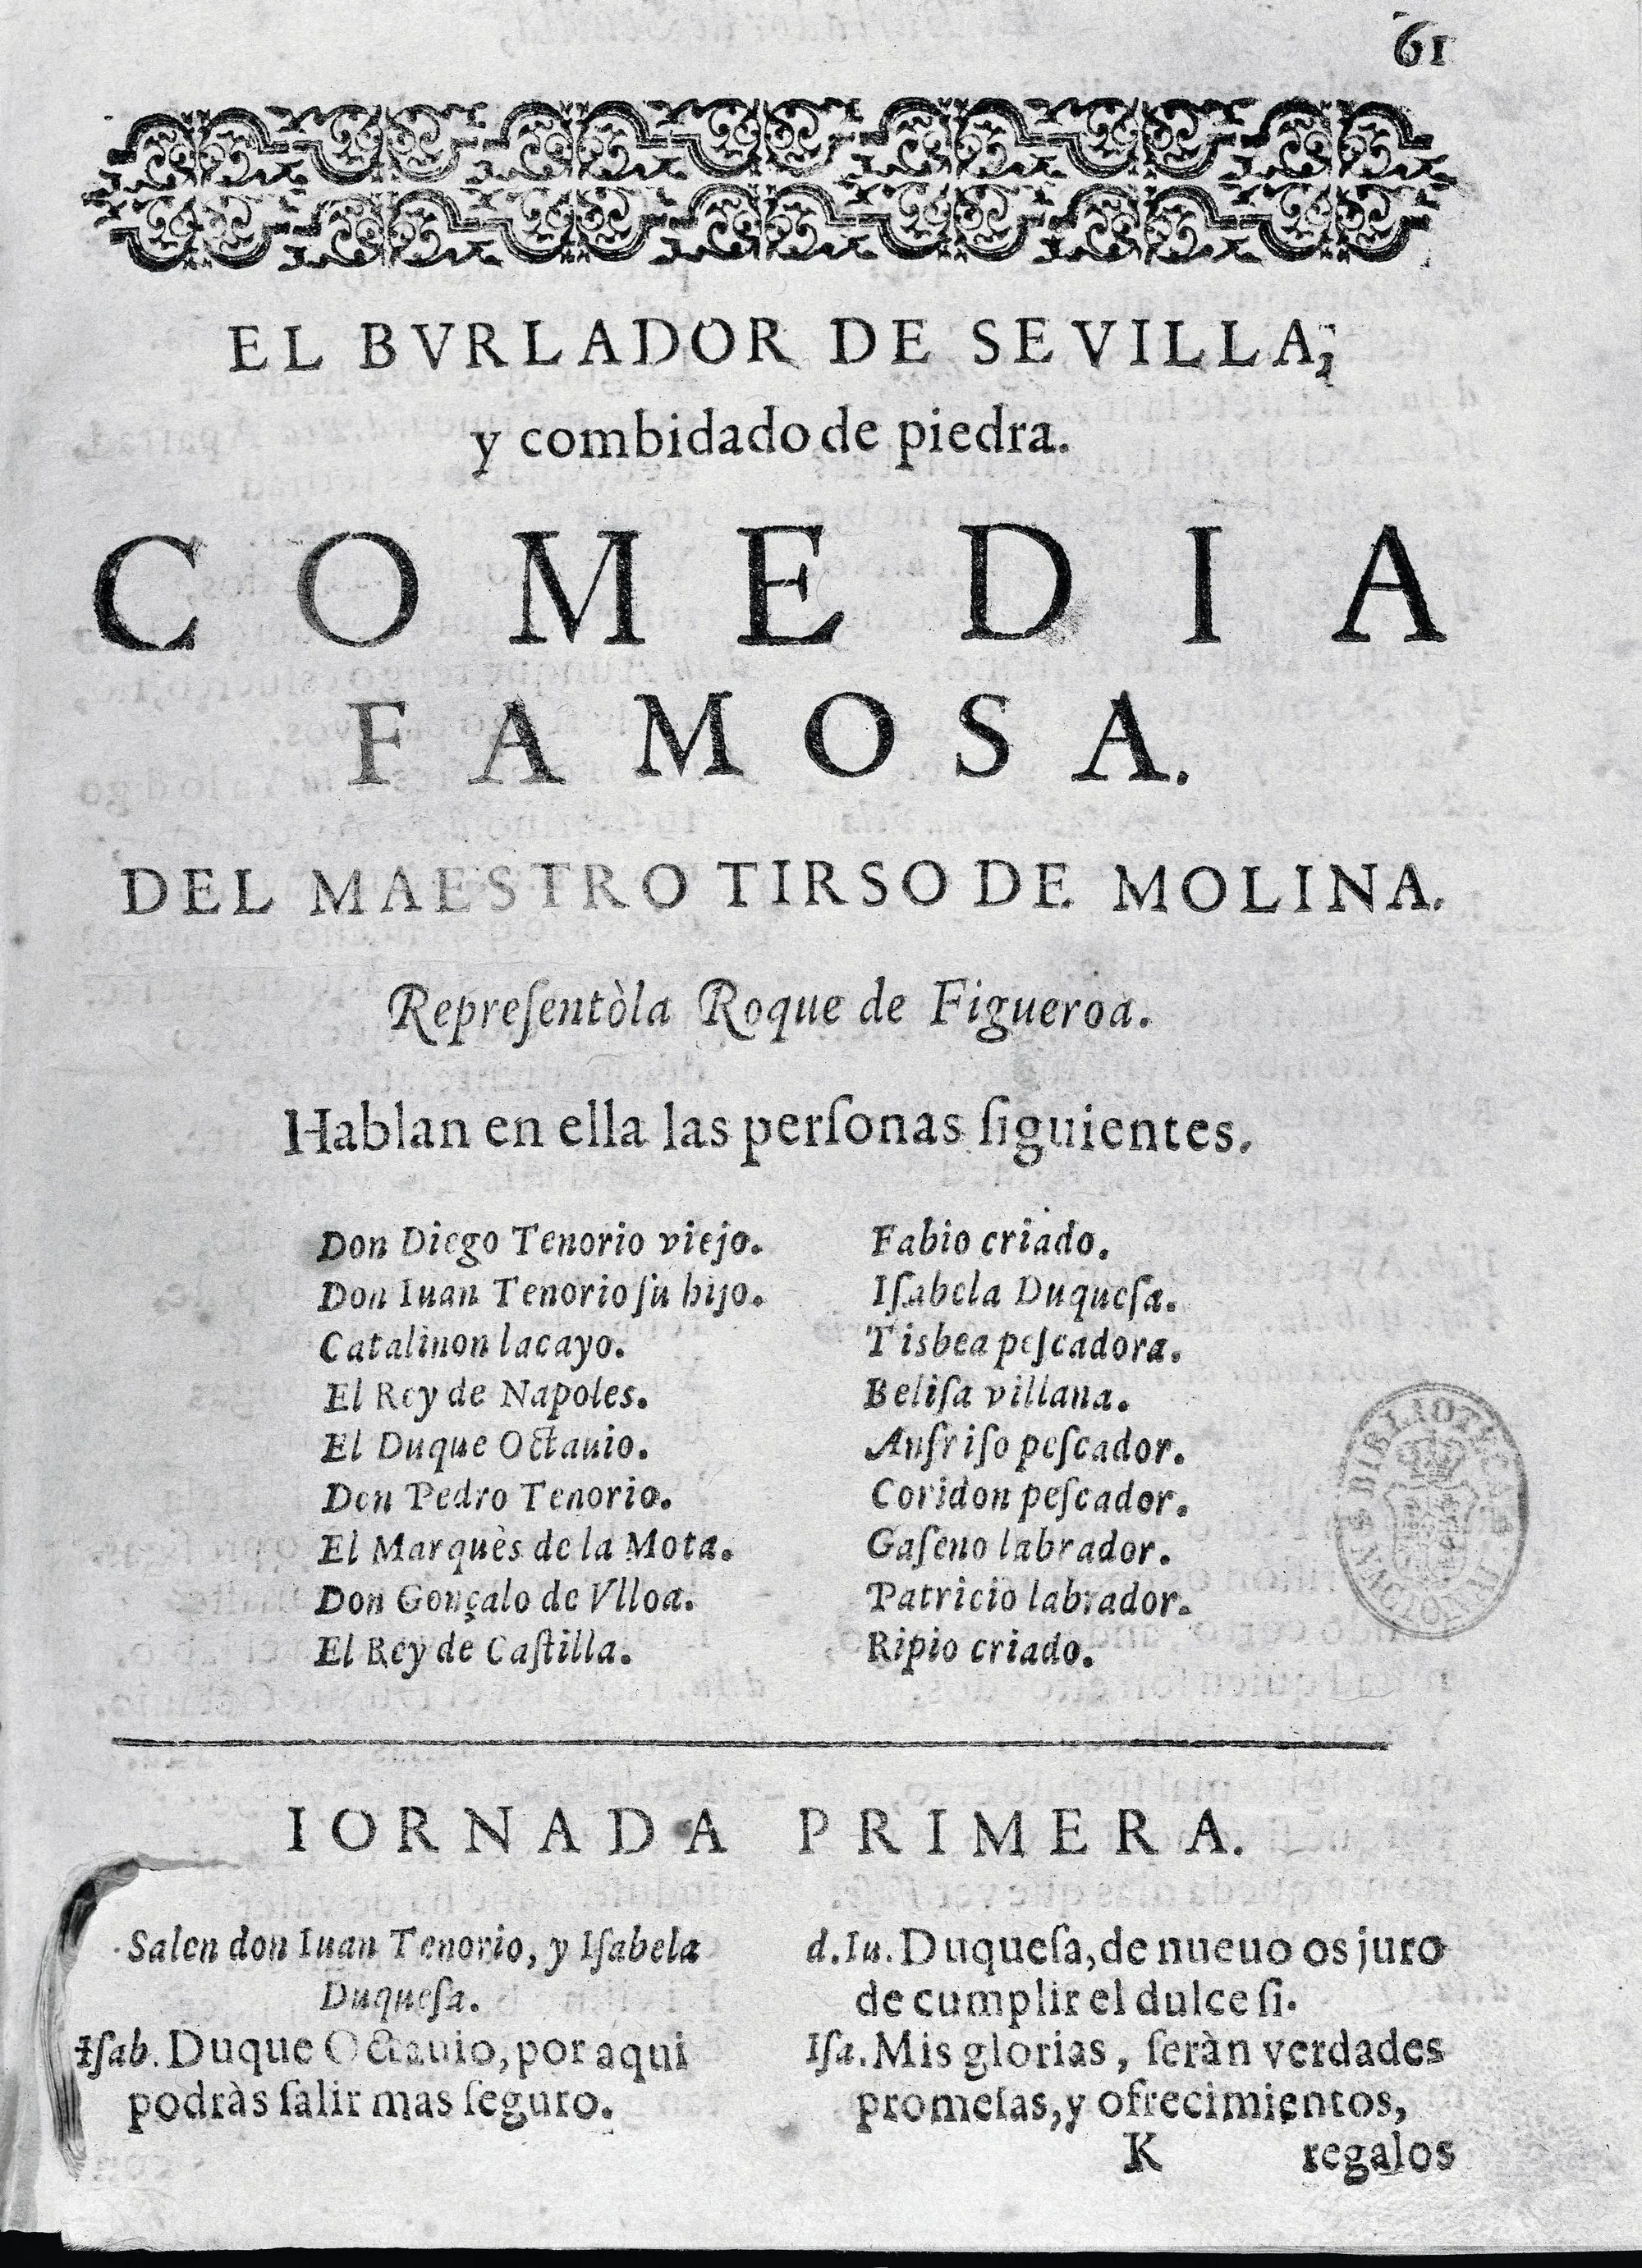 Tirso de Molina, El Burlador de Sevilla, édition du XVIIe siècle, Bibliothèque nationale, Madrid.